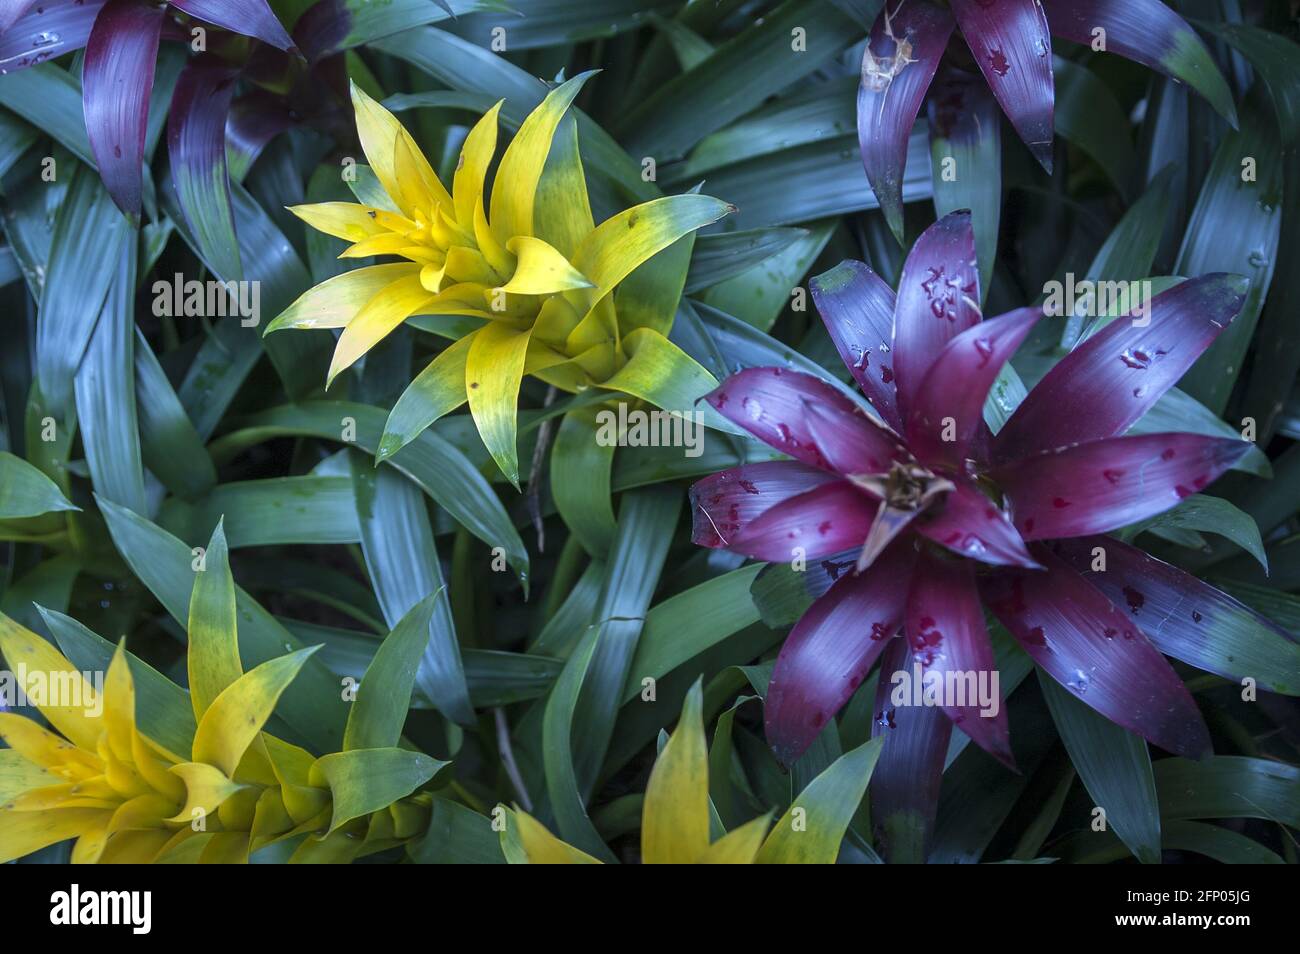 Singapore, Singapur, Asia, Asien; Botanic Garden; Botanischer Garten; Guzmania - close up; Roślina tropikalna i egzotyczna, kolorowe liście Stock Photo